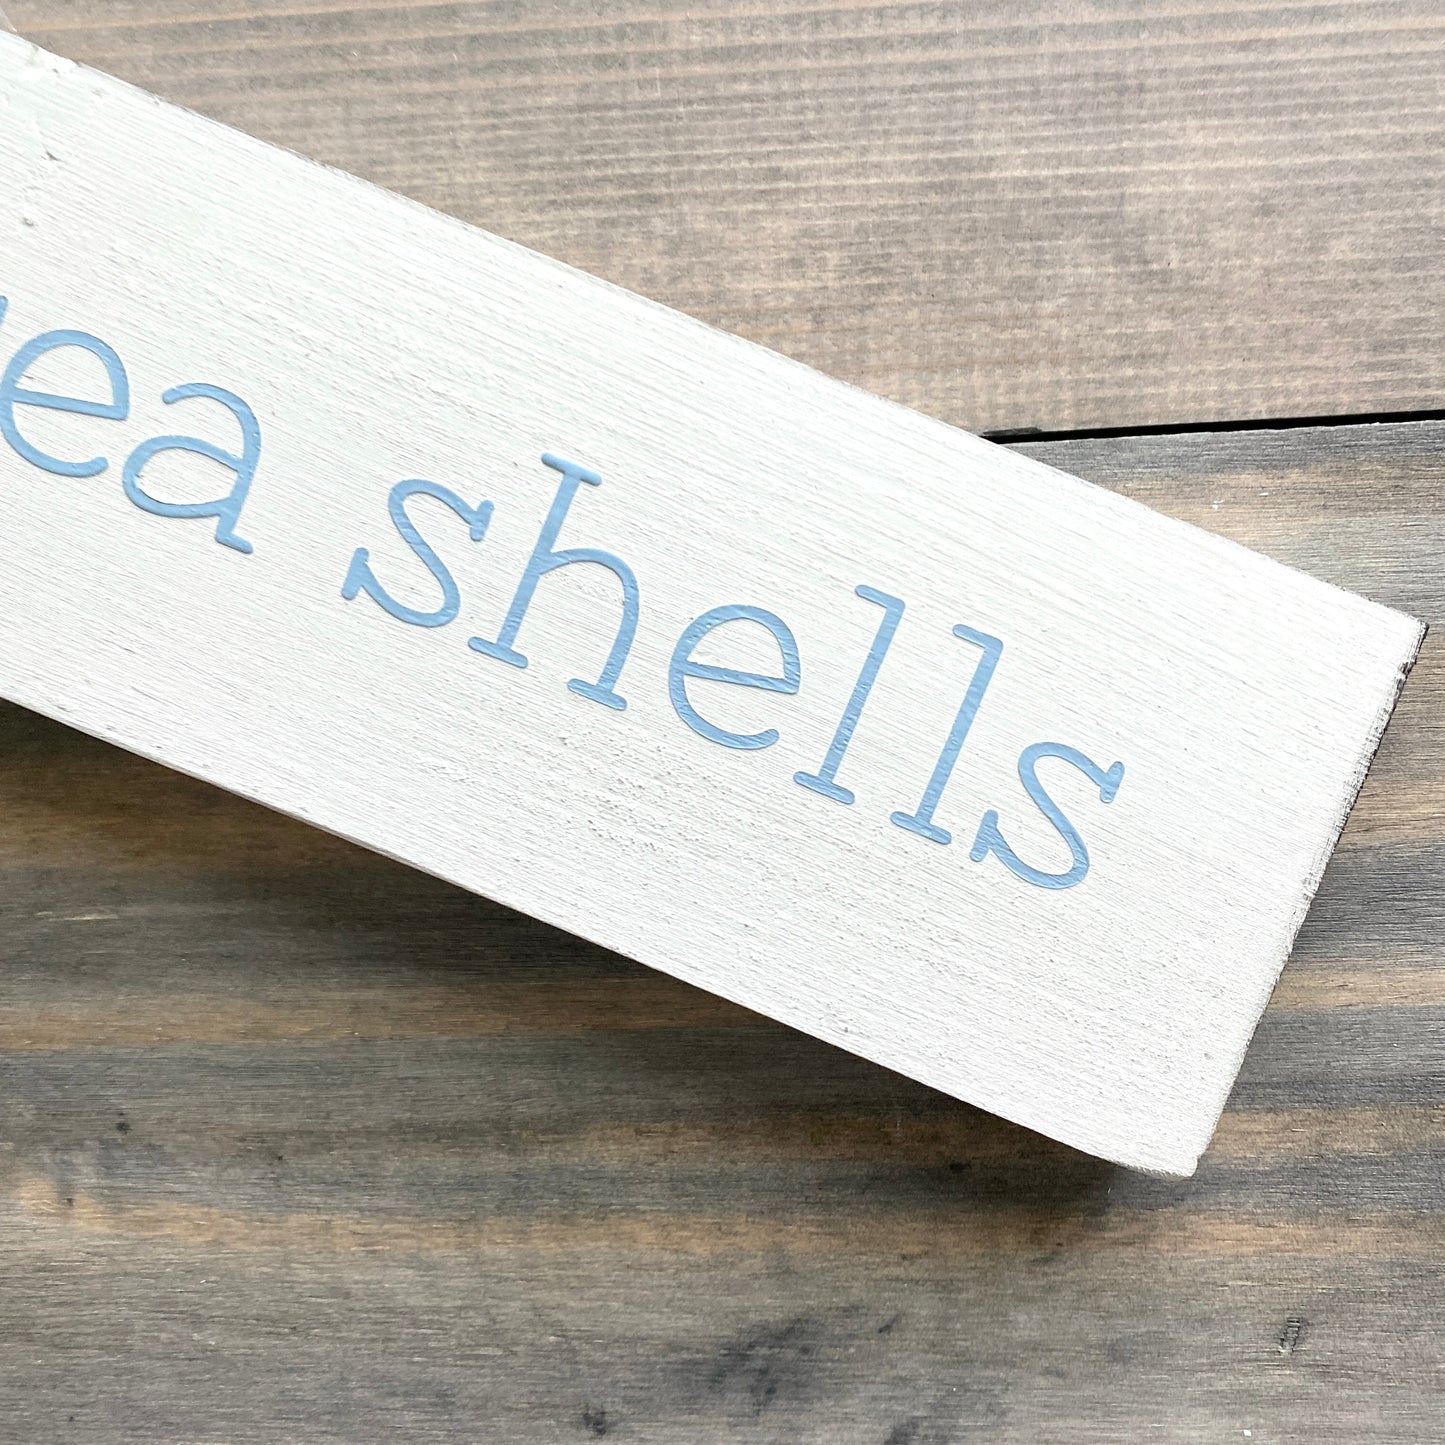 Sea Shells Sign